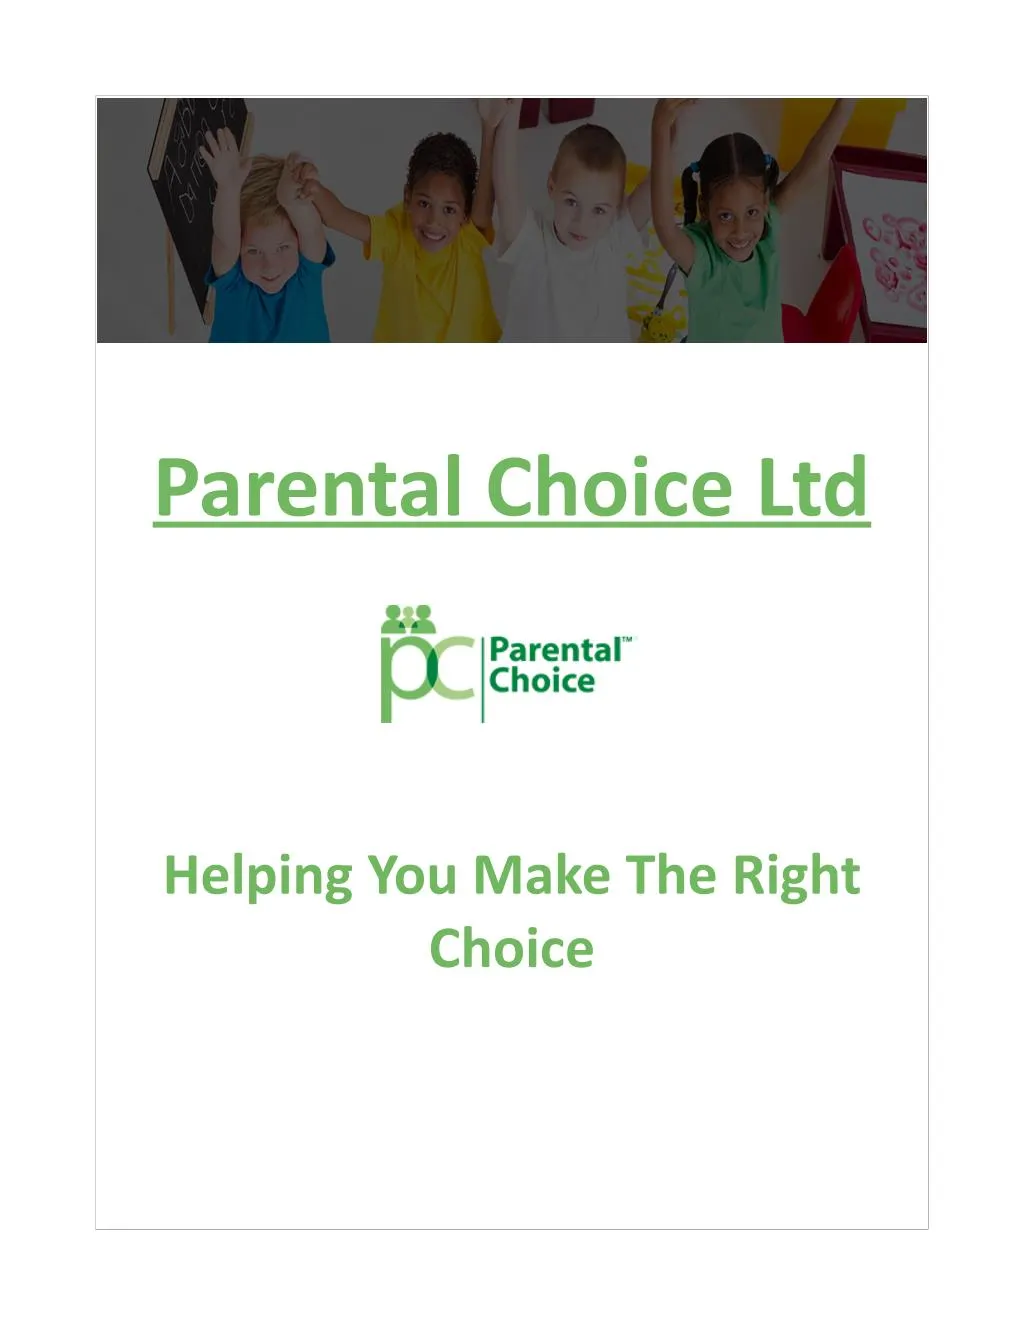 parental choice ltd